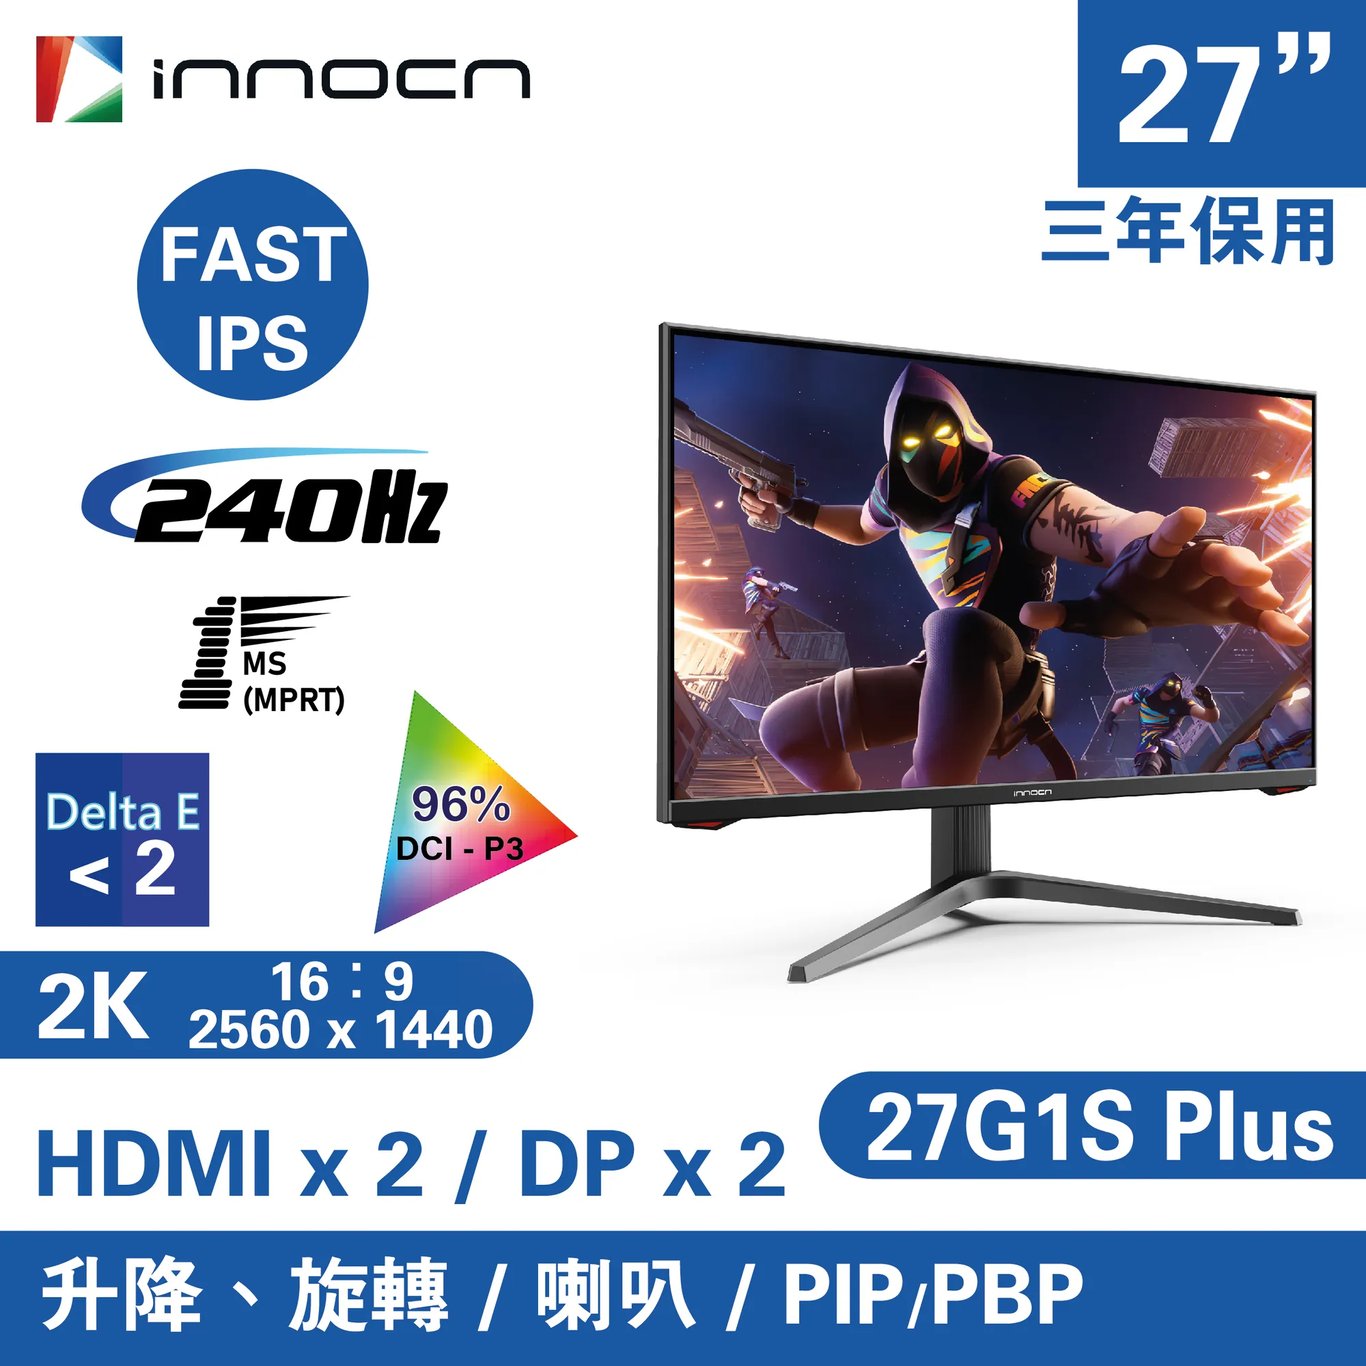 INNOCN 27G1S Plus 電競顯示器